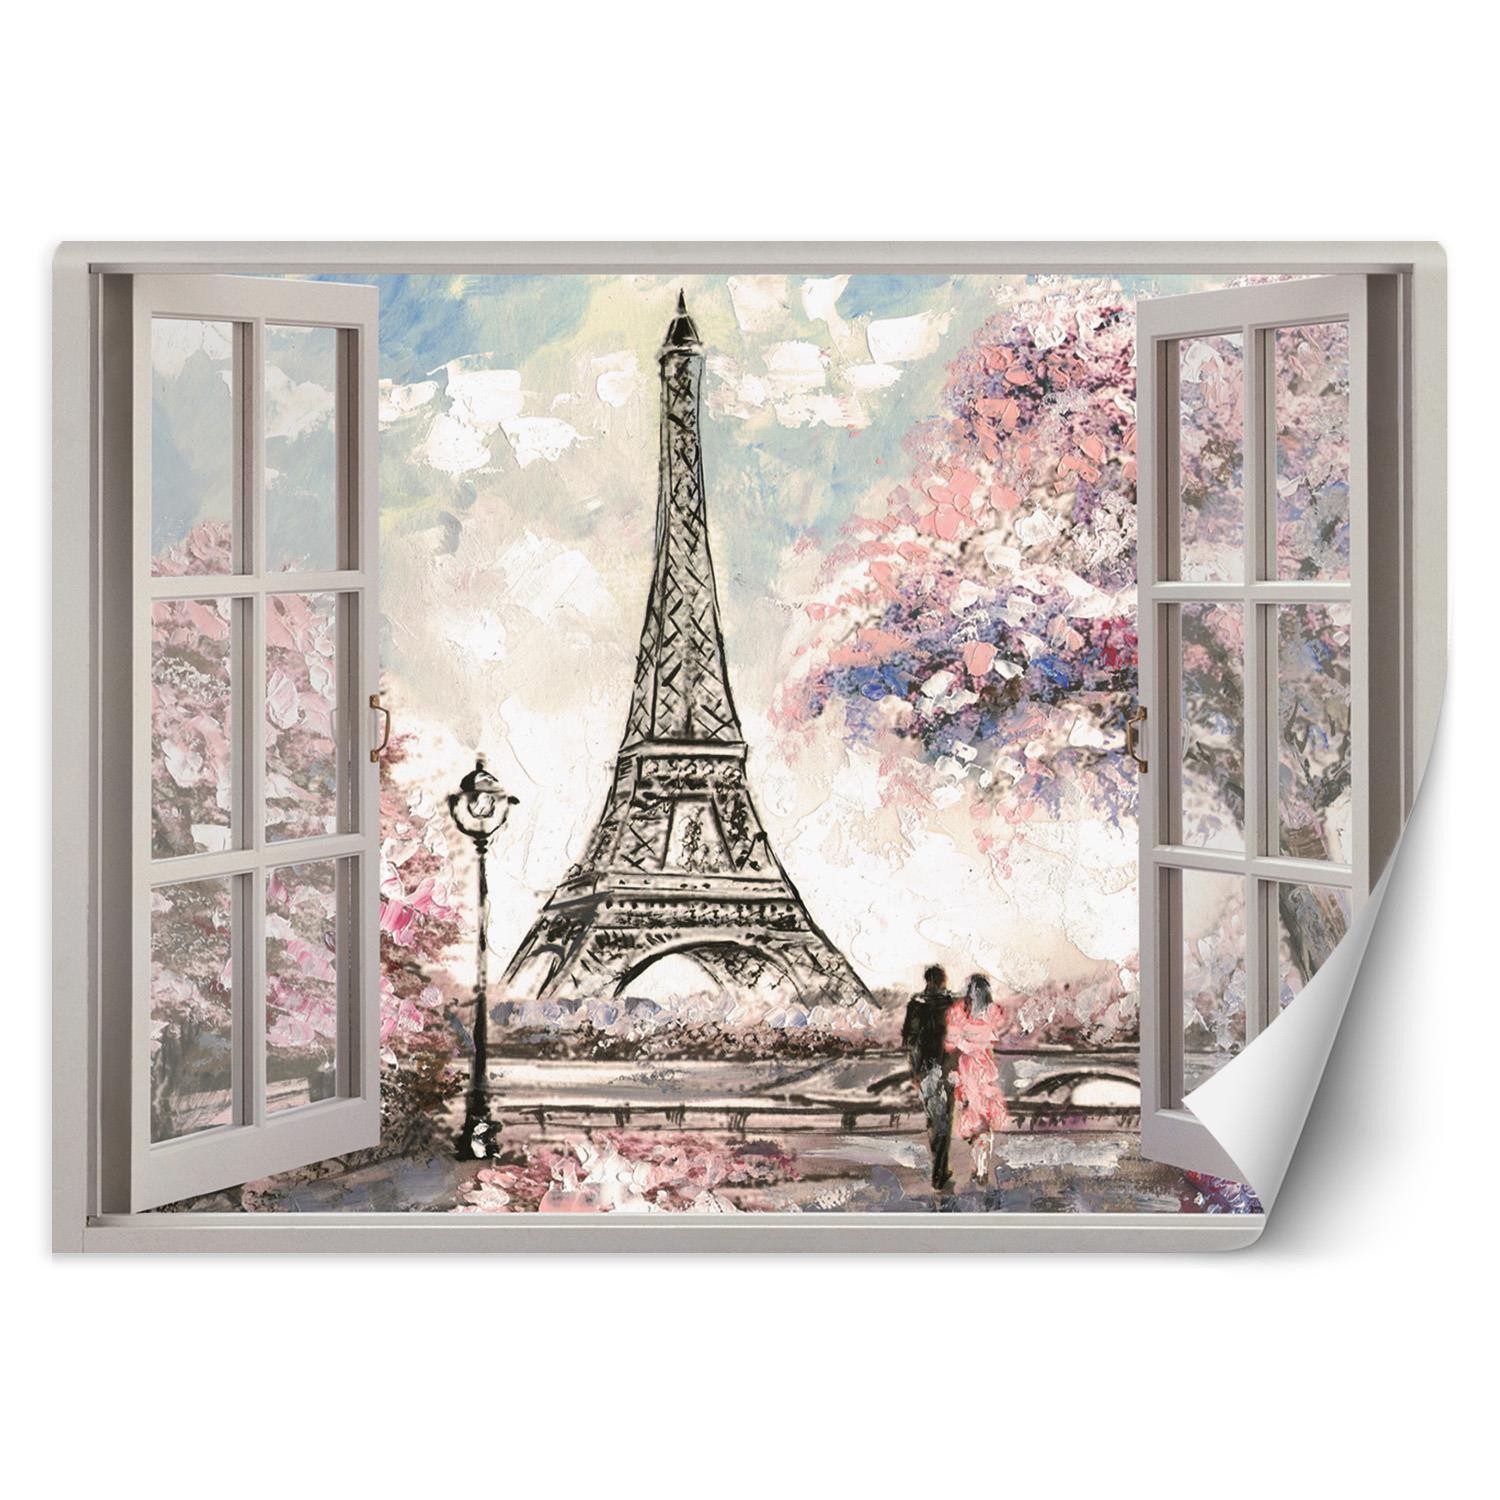 in de rij gaan staan anker uitstulping Trend24 - Behang - Venster Met Uitzicht Op De Eiffeltoren - Behangpapier -  Fotobehang - Behang Woonkamer - 140x100 cm - Incl. behanglijm - Trend24